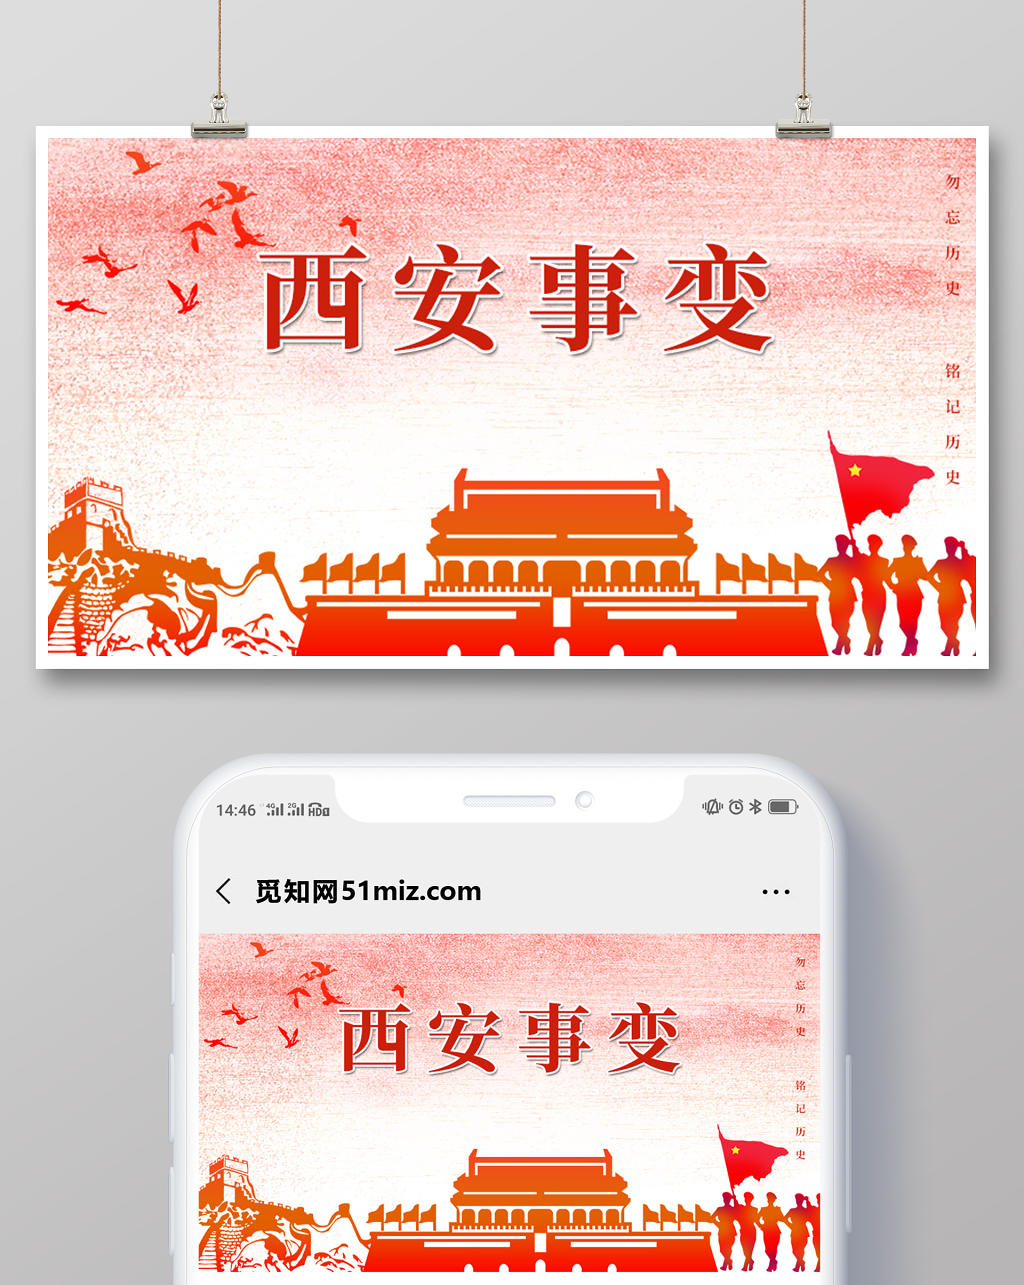 封面微信公众号首图西安事变纪念日红色革命天安门长城剪影革命纪念日